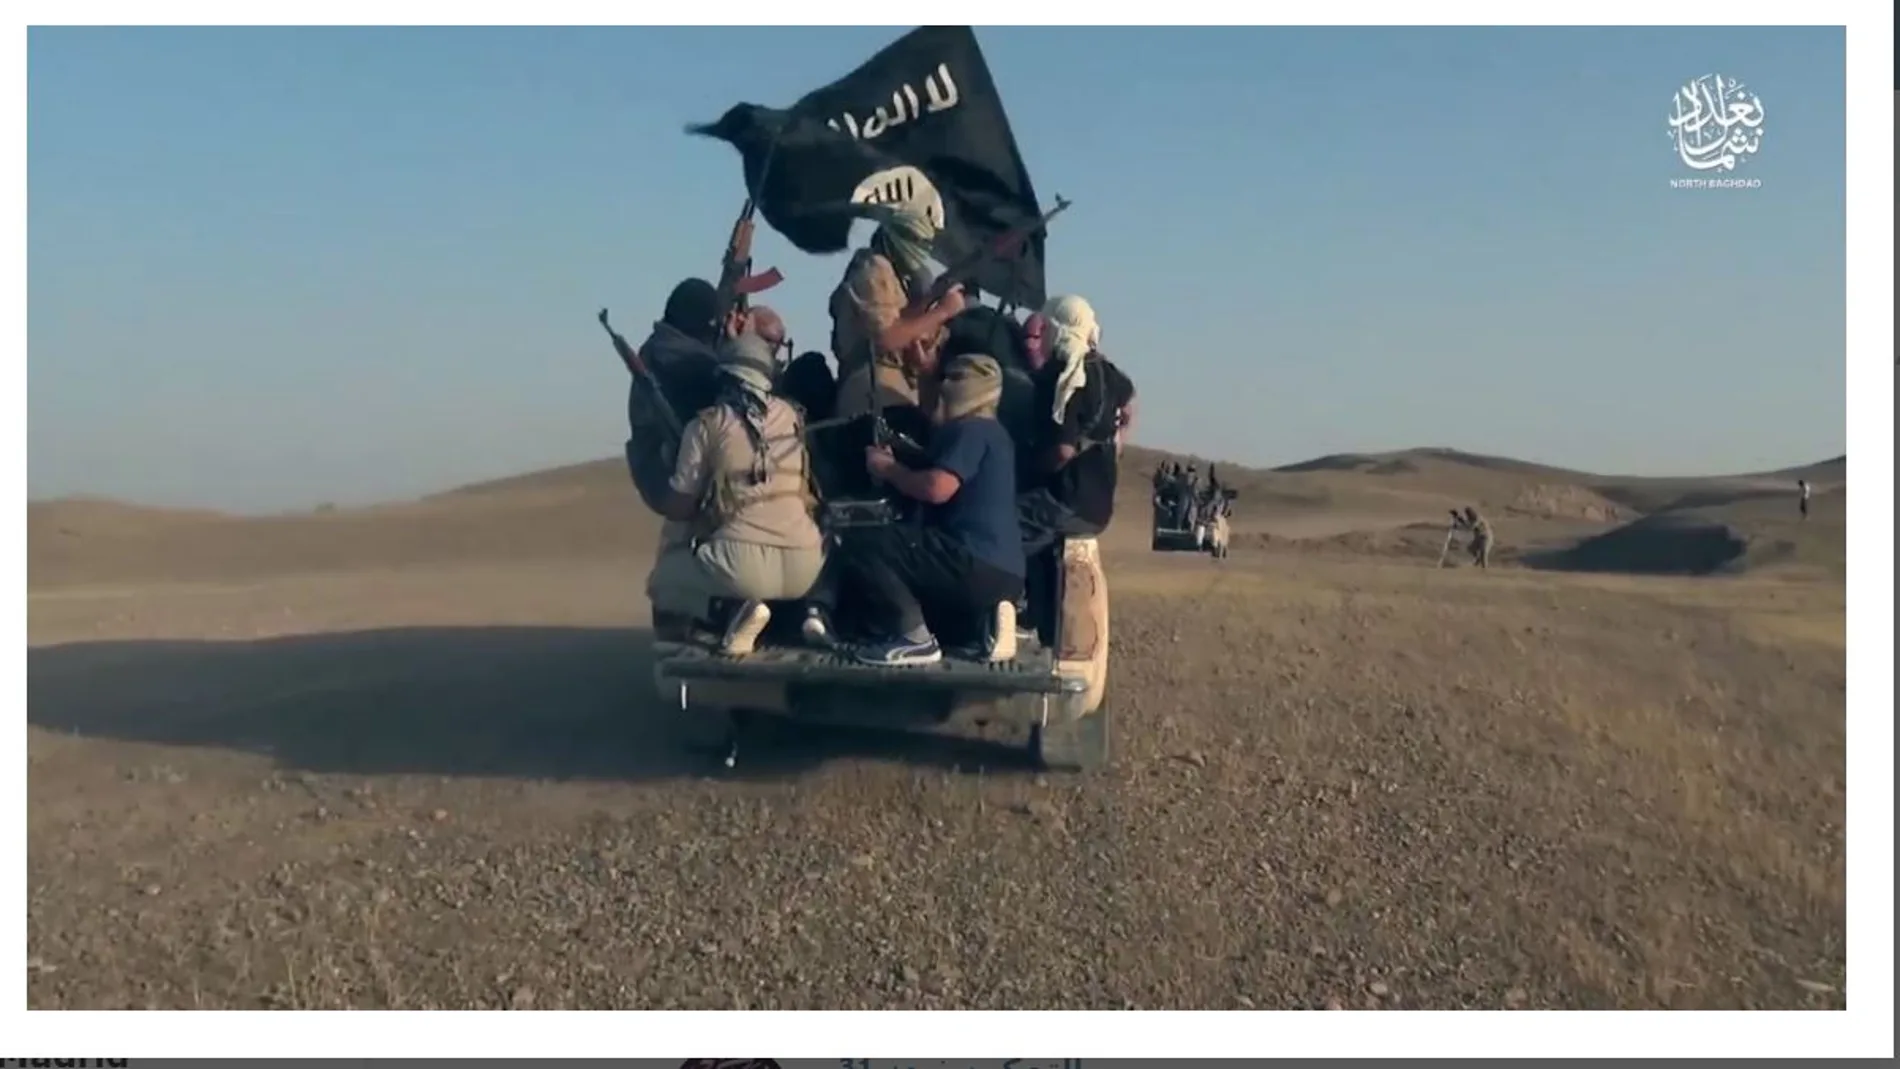 Un pick up circula por una zona desértica completamente lleno de terroristas yihadistas